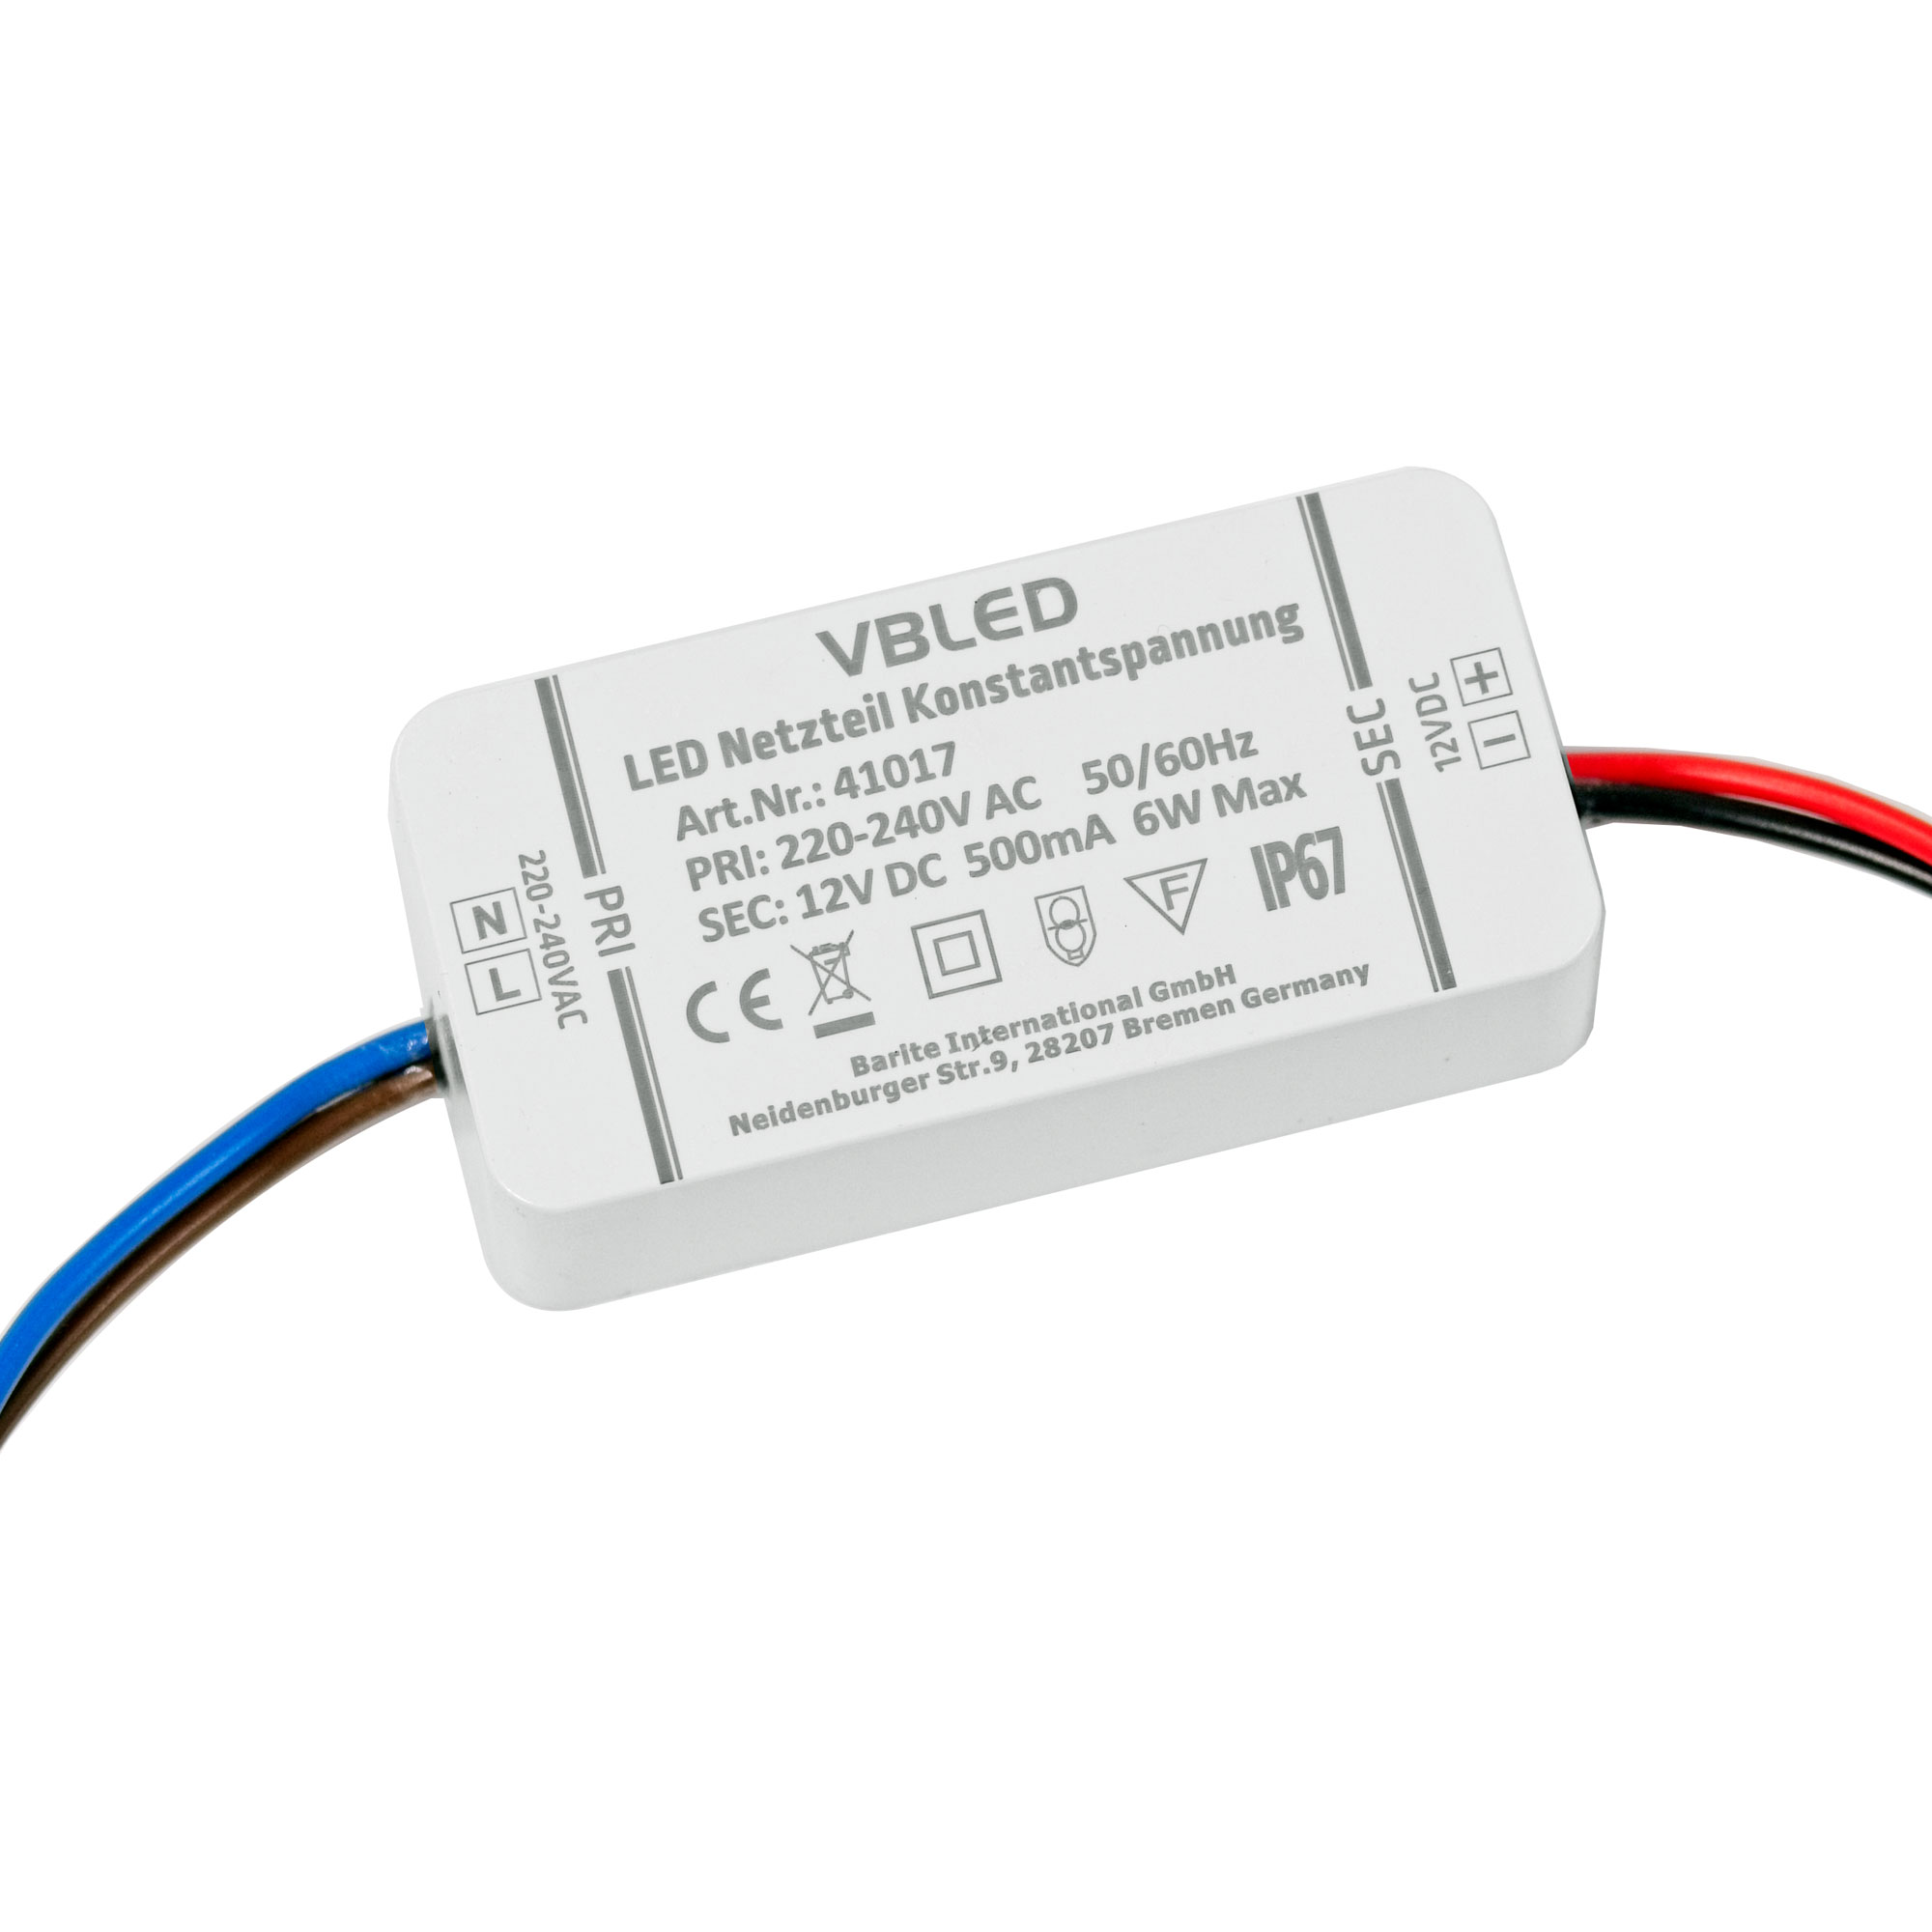 Netzteil für LED-Streifen und LED-Streifen wasserdicht GPV-75-12